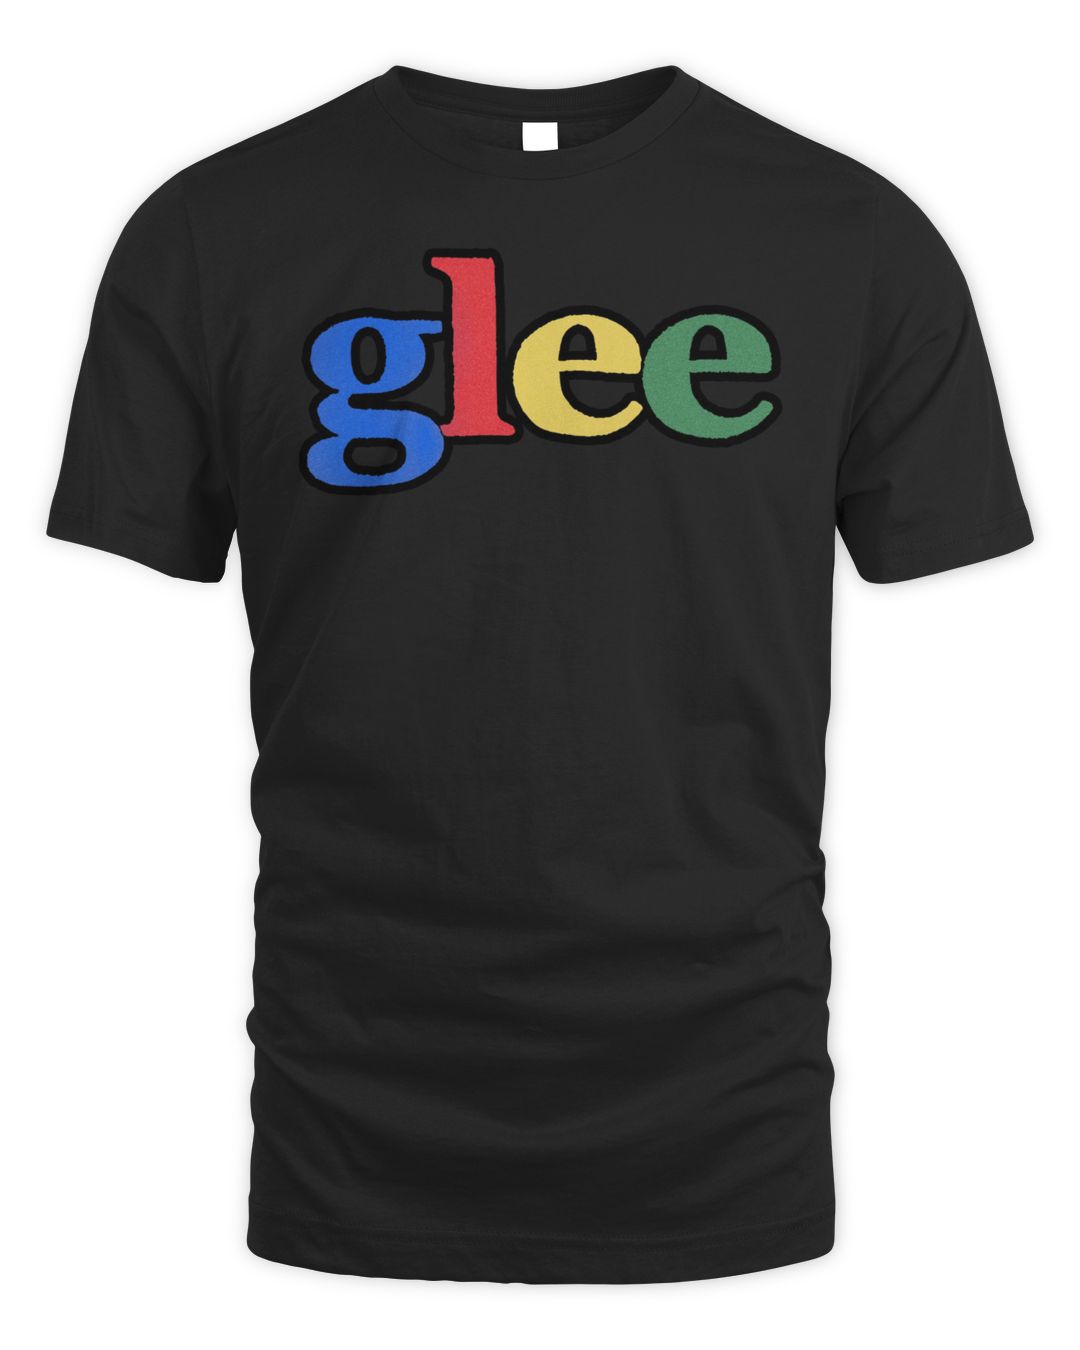 Sniper Gang Merch Glee Shirt | Cassivalen